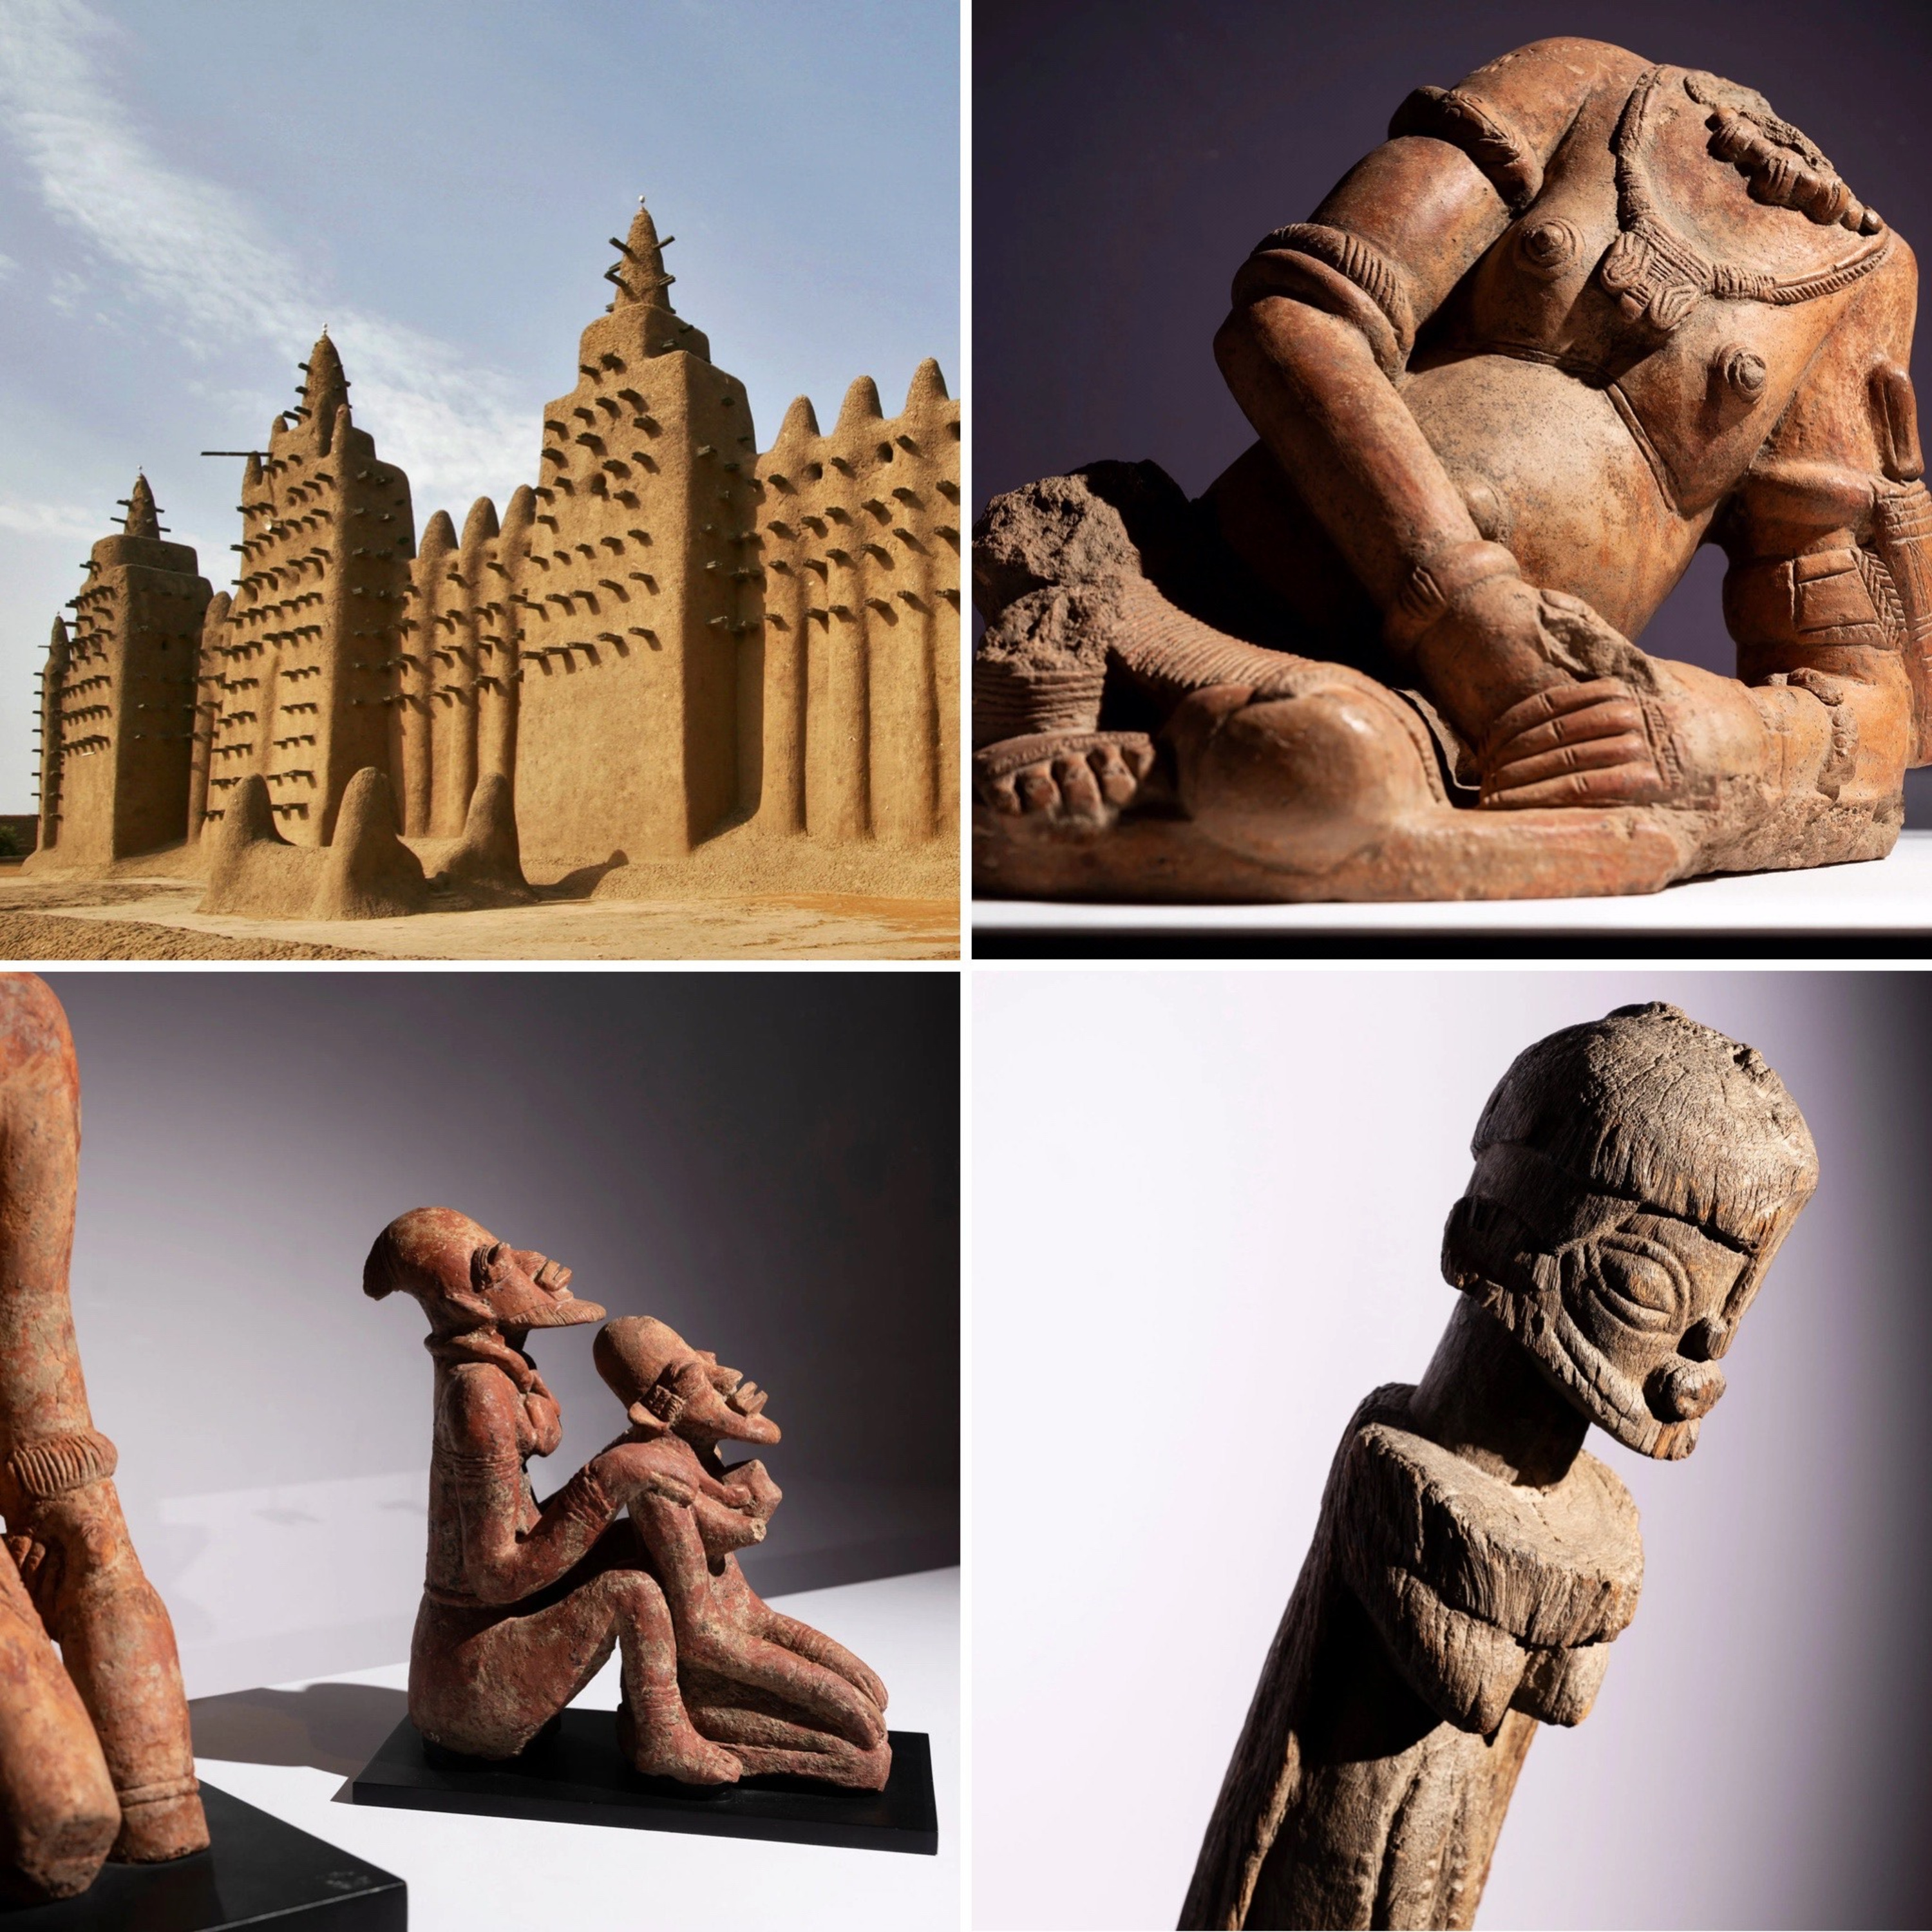 63 El arte de Malí - Historia del arte con Kenza